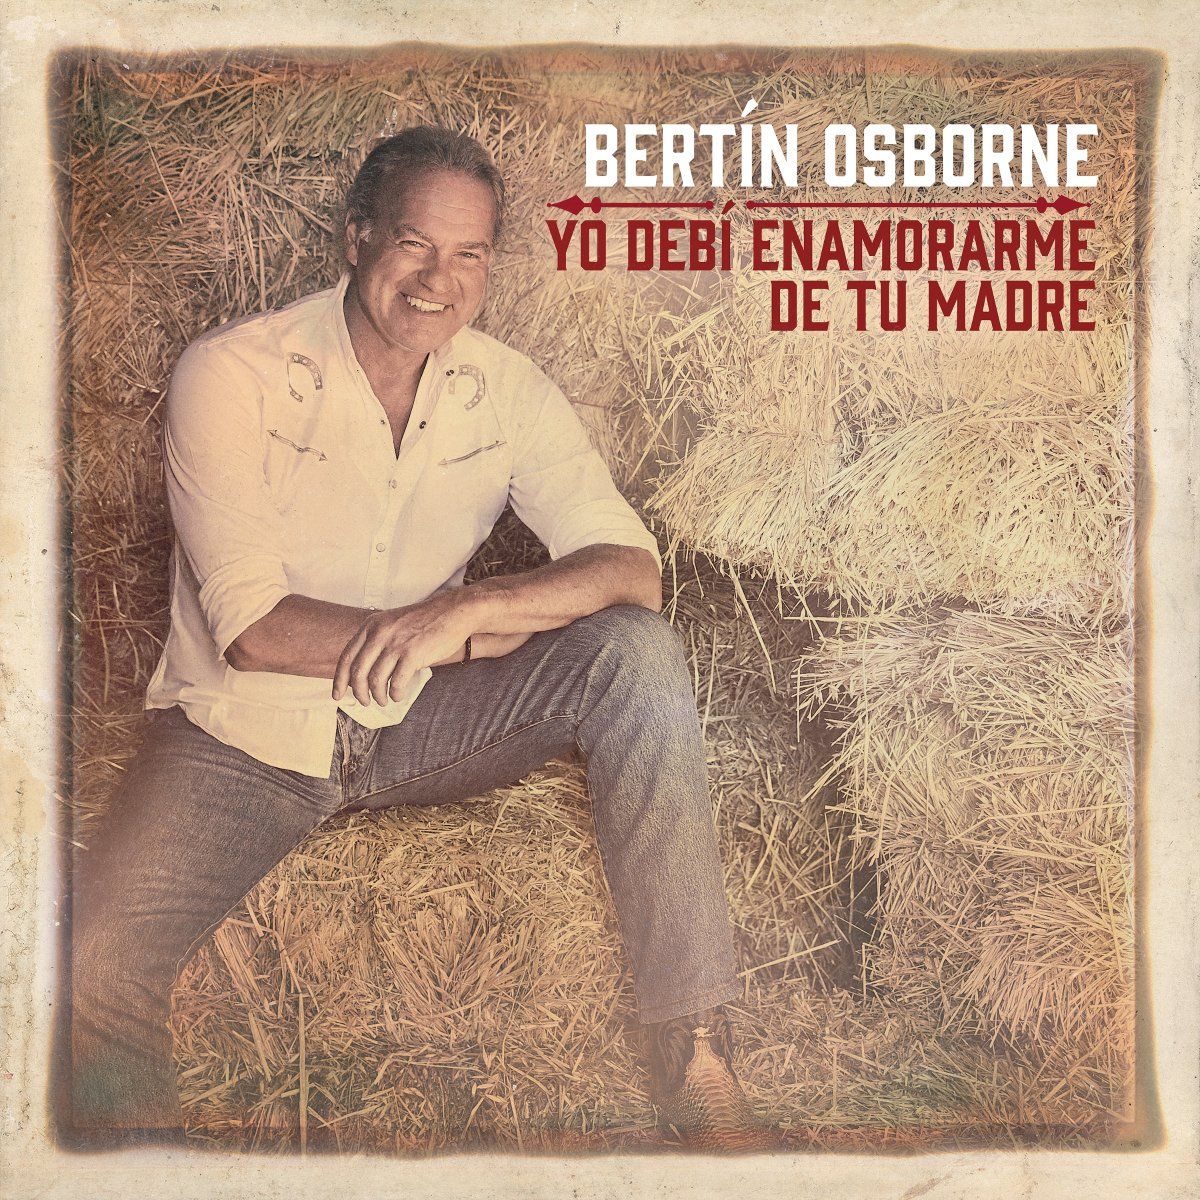 La portada del nuevo disco de Bertín Osborne